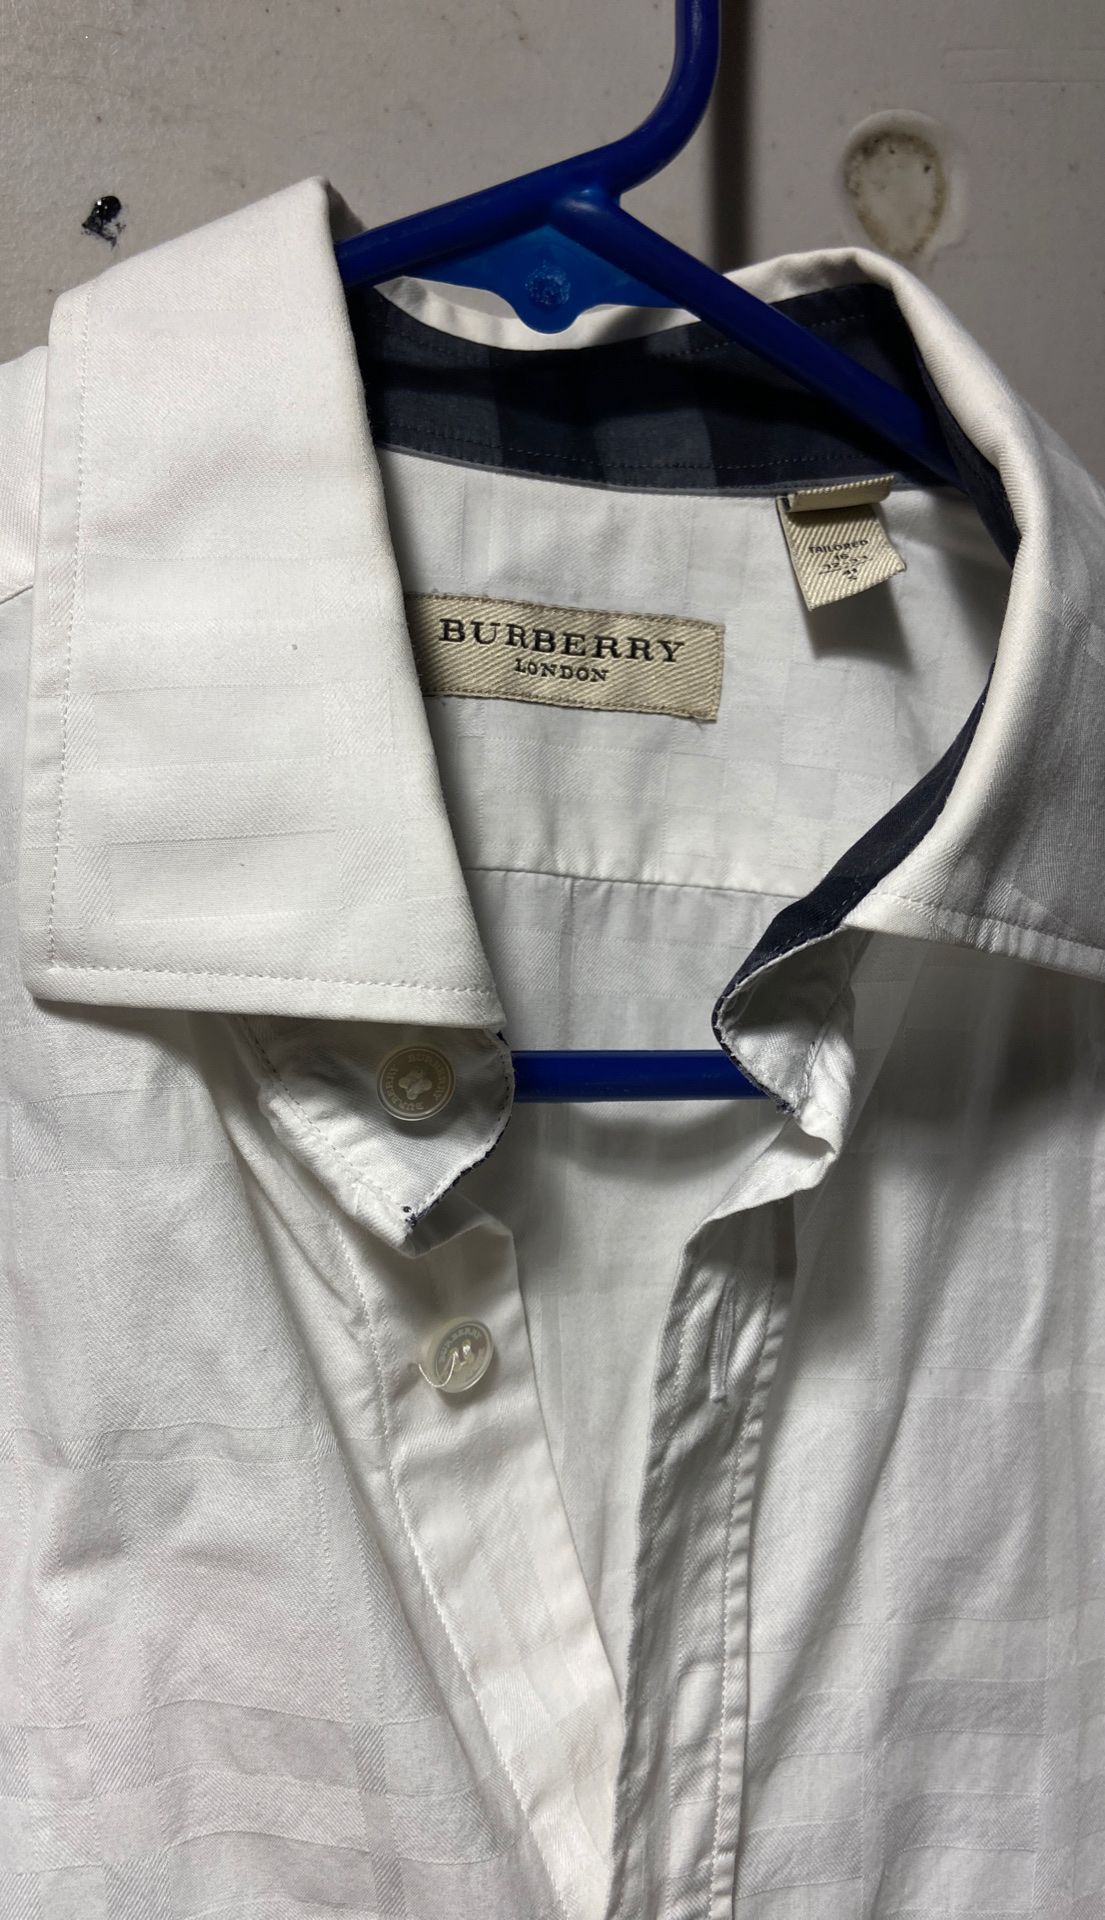 Men’s Burberry dress shirt size small